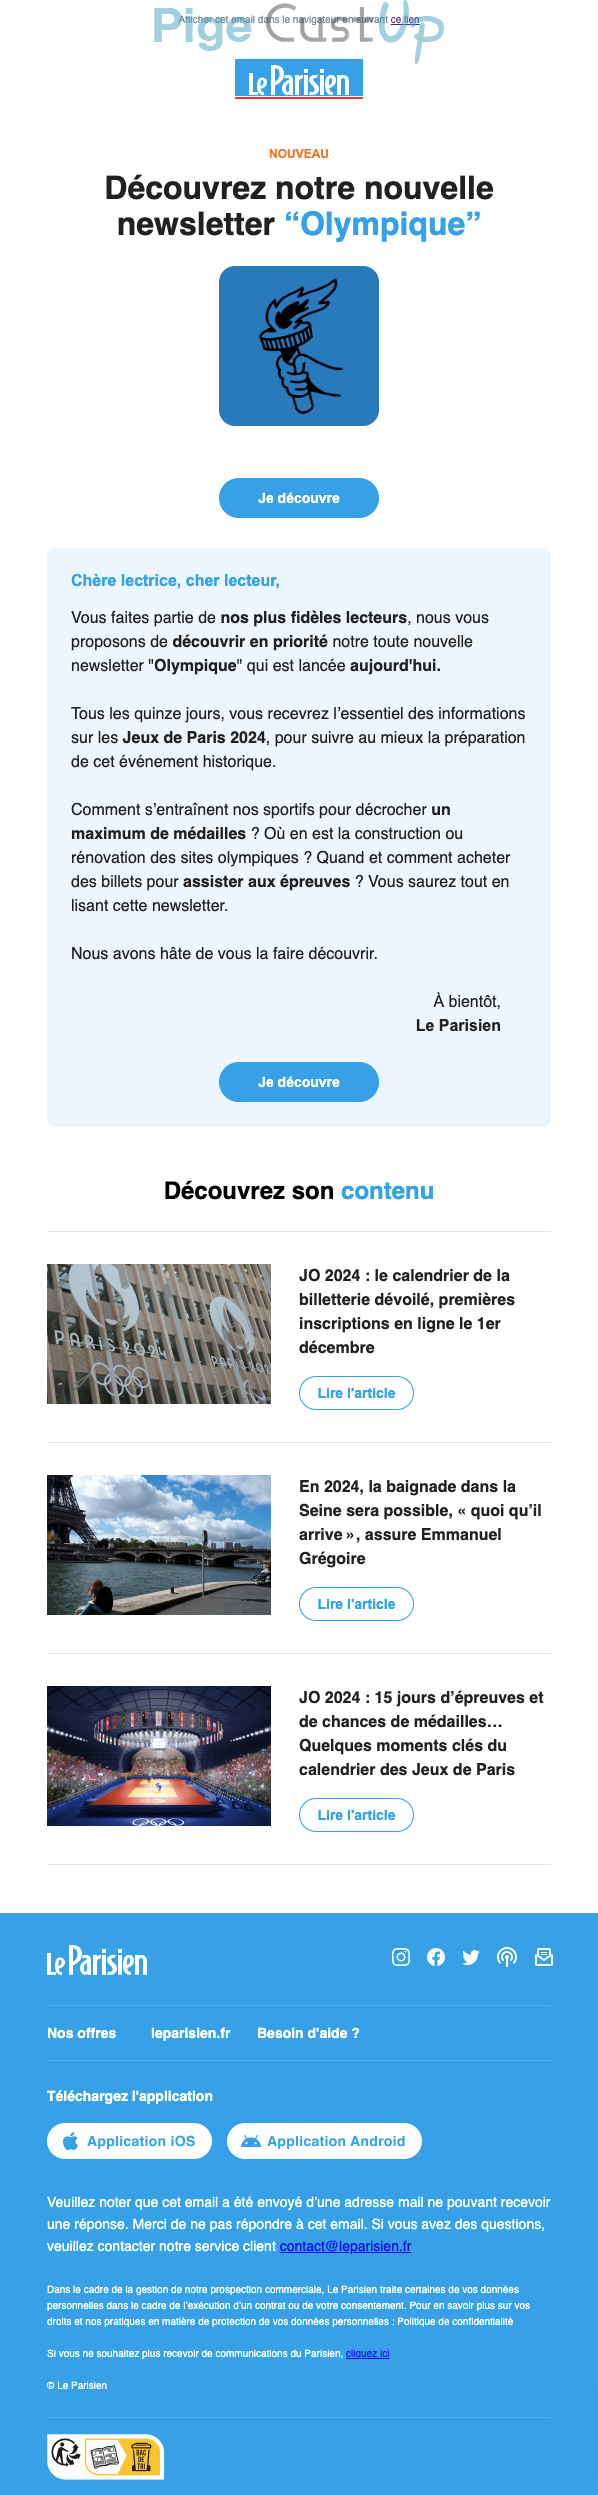 Exemple de Type de media  e-mailing - Le Parisien - Marketing marque - Communication Services - Nouveaux Services - Marketing relationnel - Newsletter